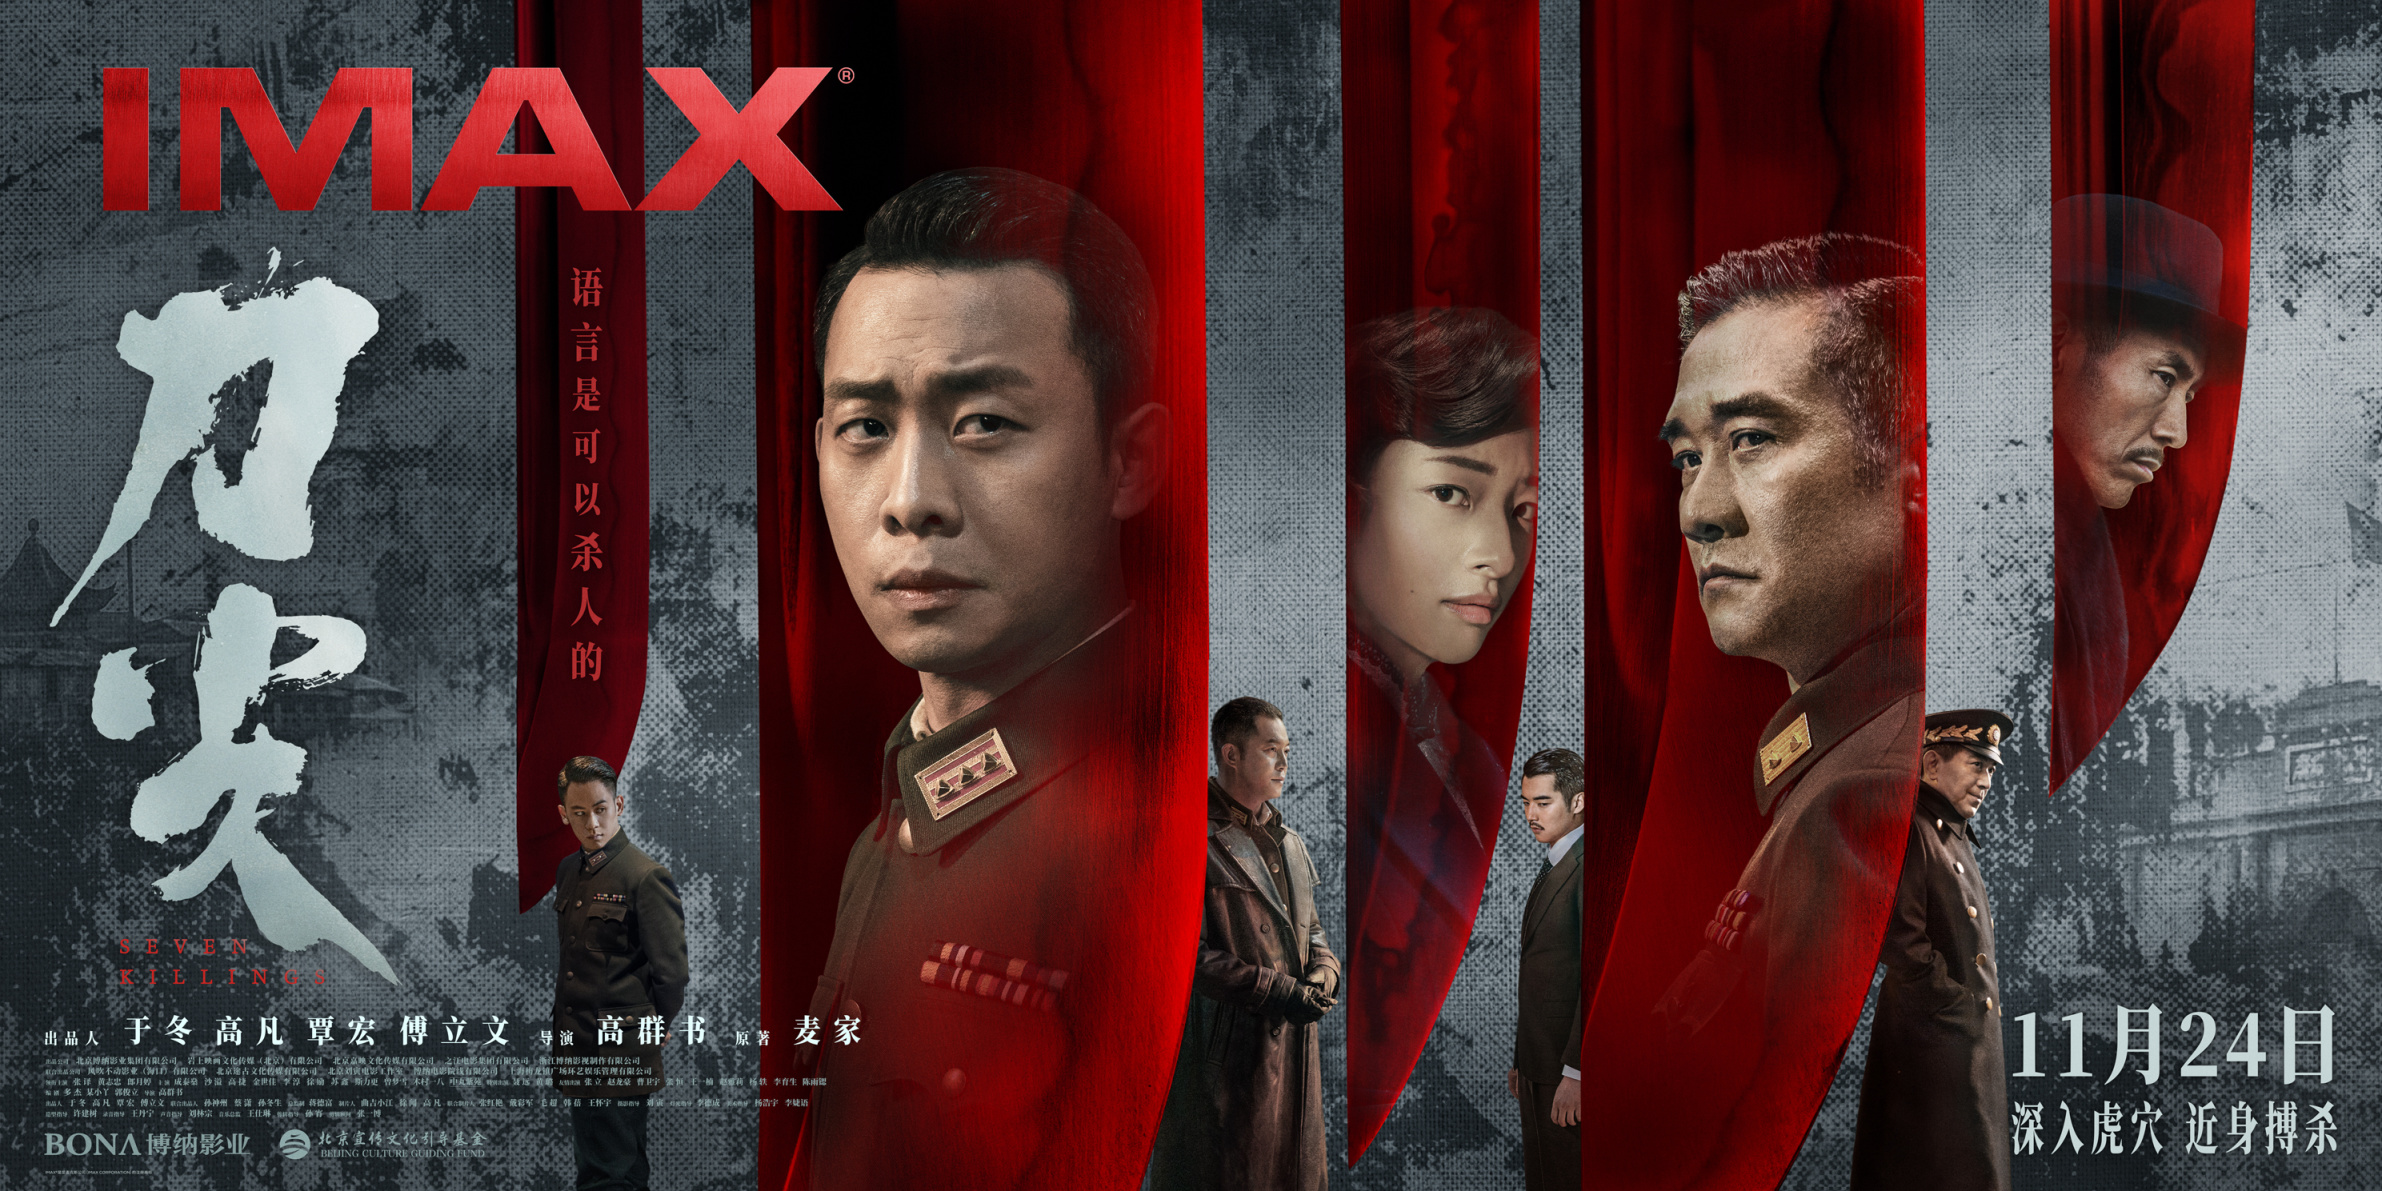 【影视动漫】谍战电影《刀尖》11月24日登陆IMAX影院